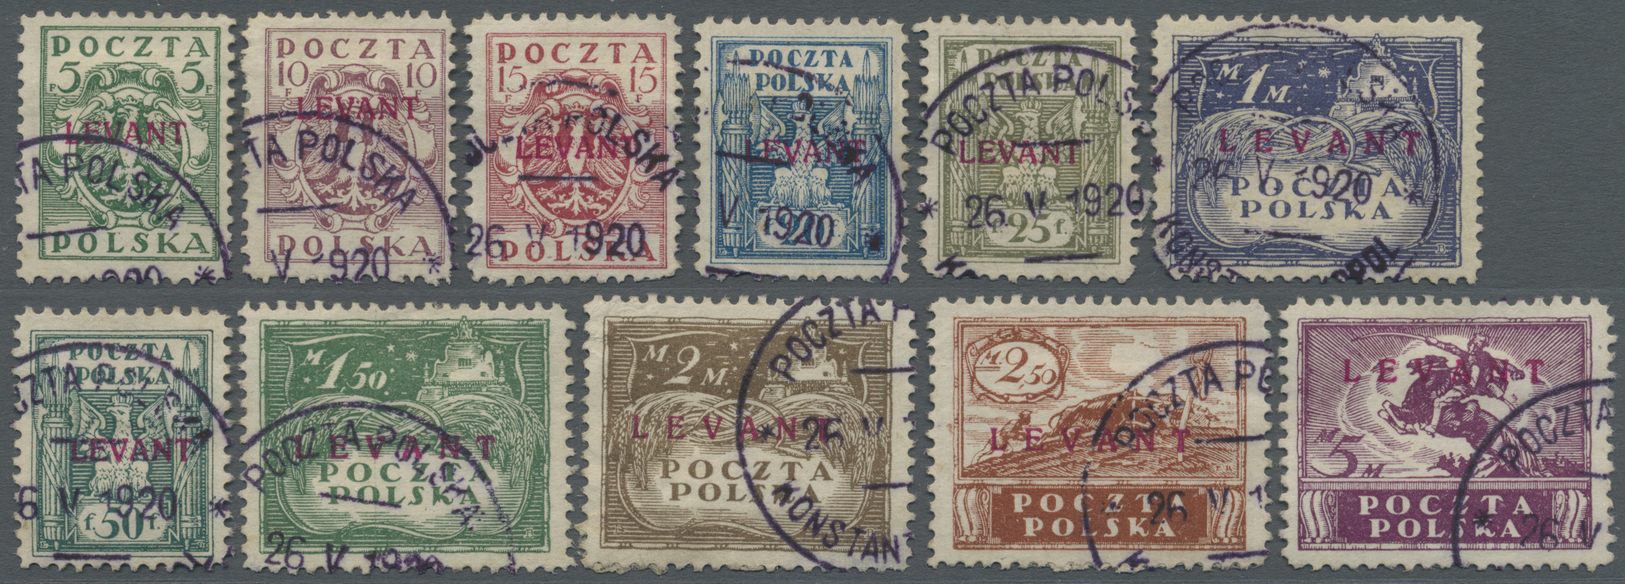 O Polen - Post In Der Levante: 1919, 5 F. - 5 M. Konsulatspost In Der Türkei, Marken Polens Mit Kirschrotem Aufd - Levant (Turkey)